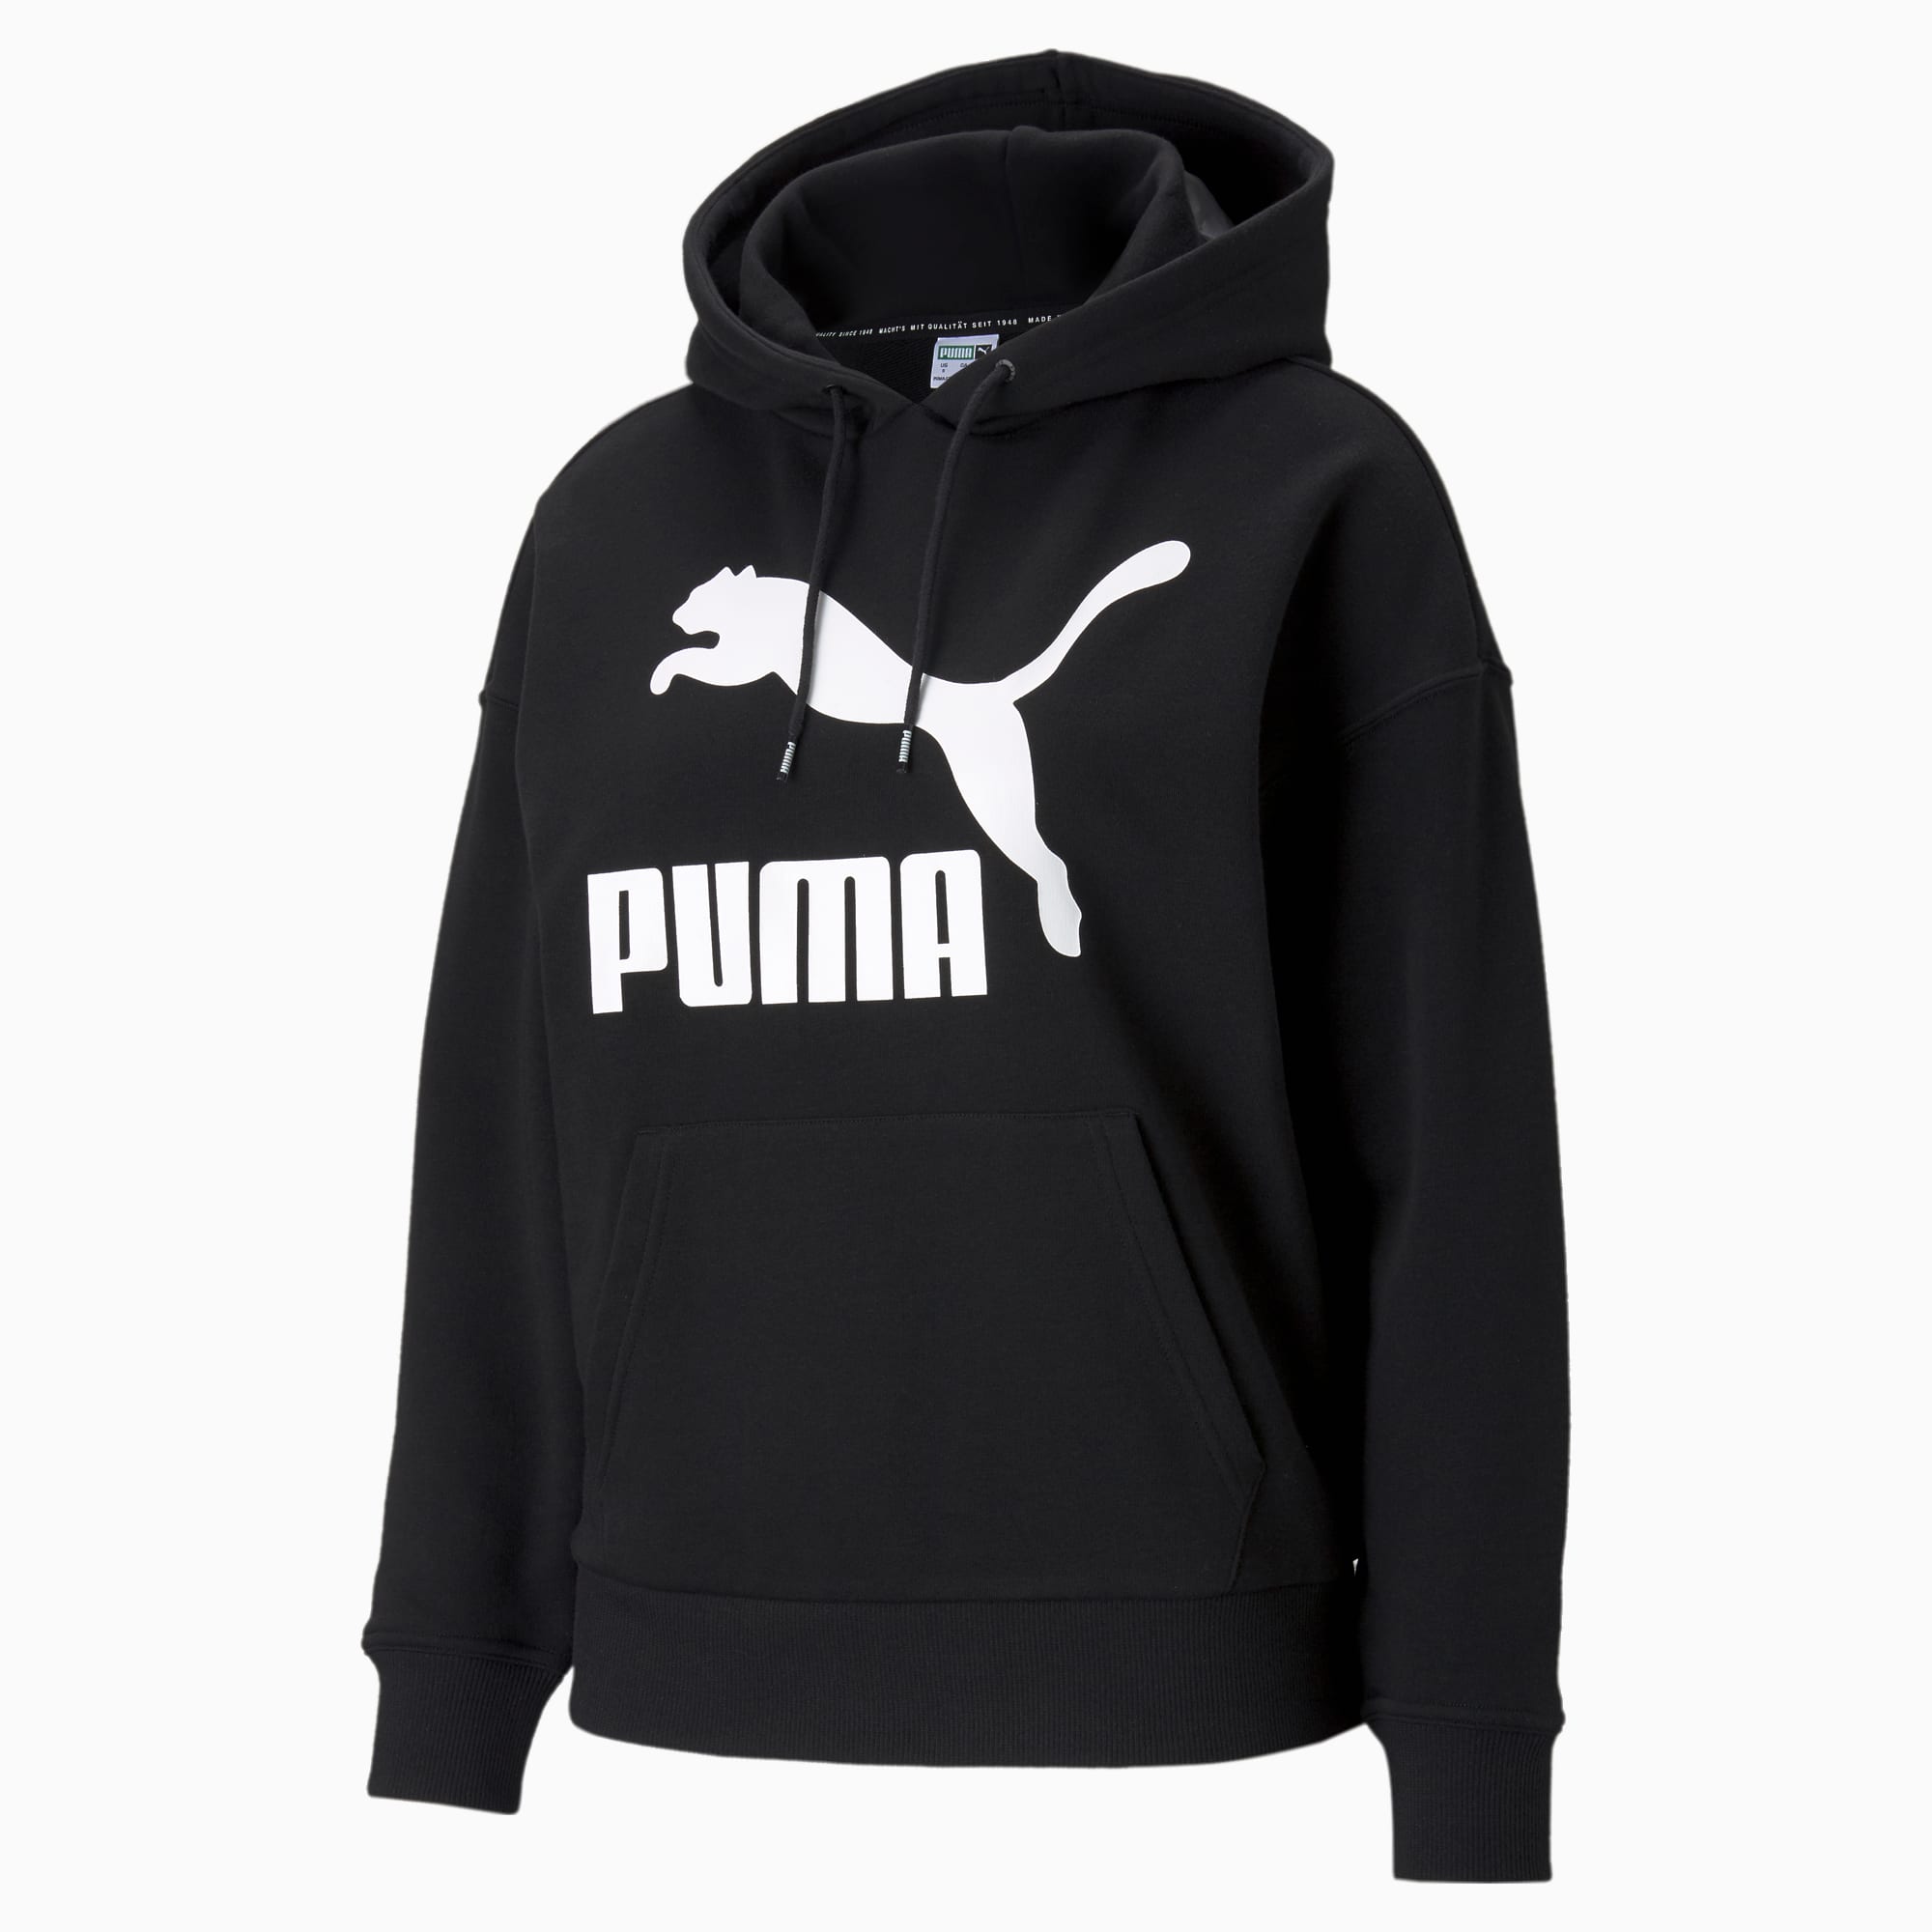 PUMA Classics Logo Damen Hoodie, Schwarz, Größe: M, Kleidung